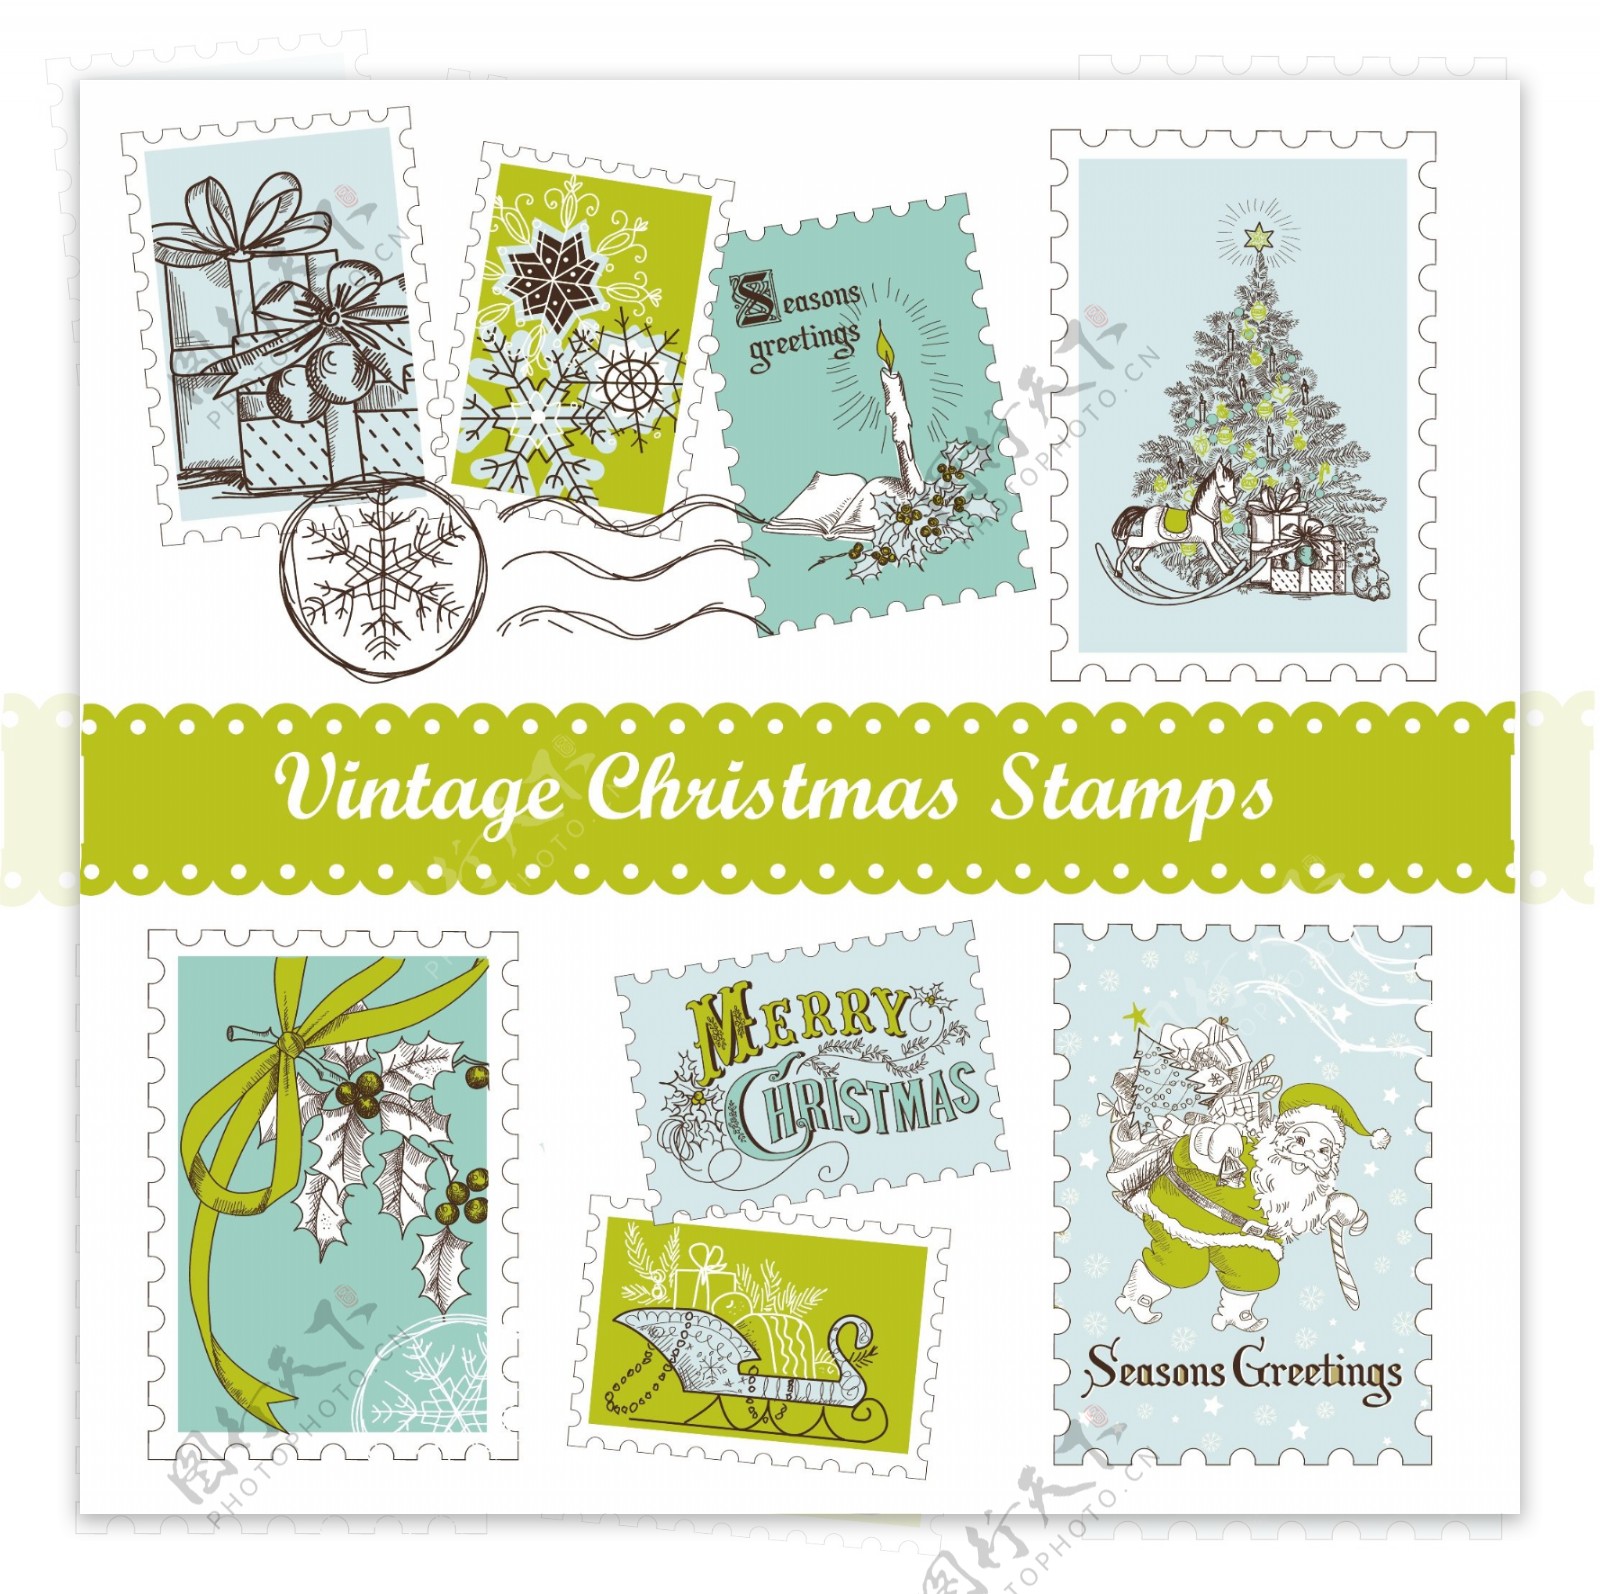 圣诞邮票图片